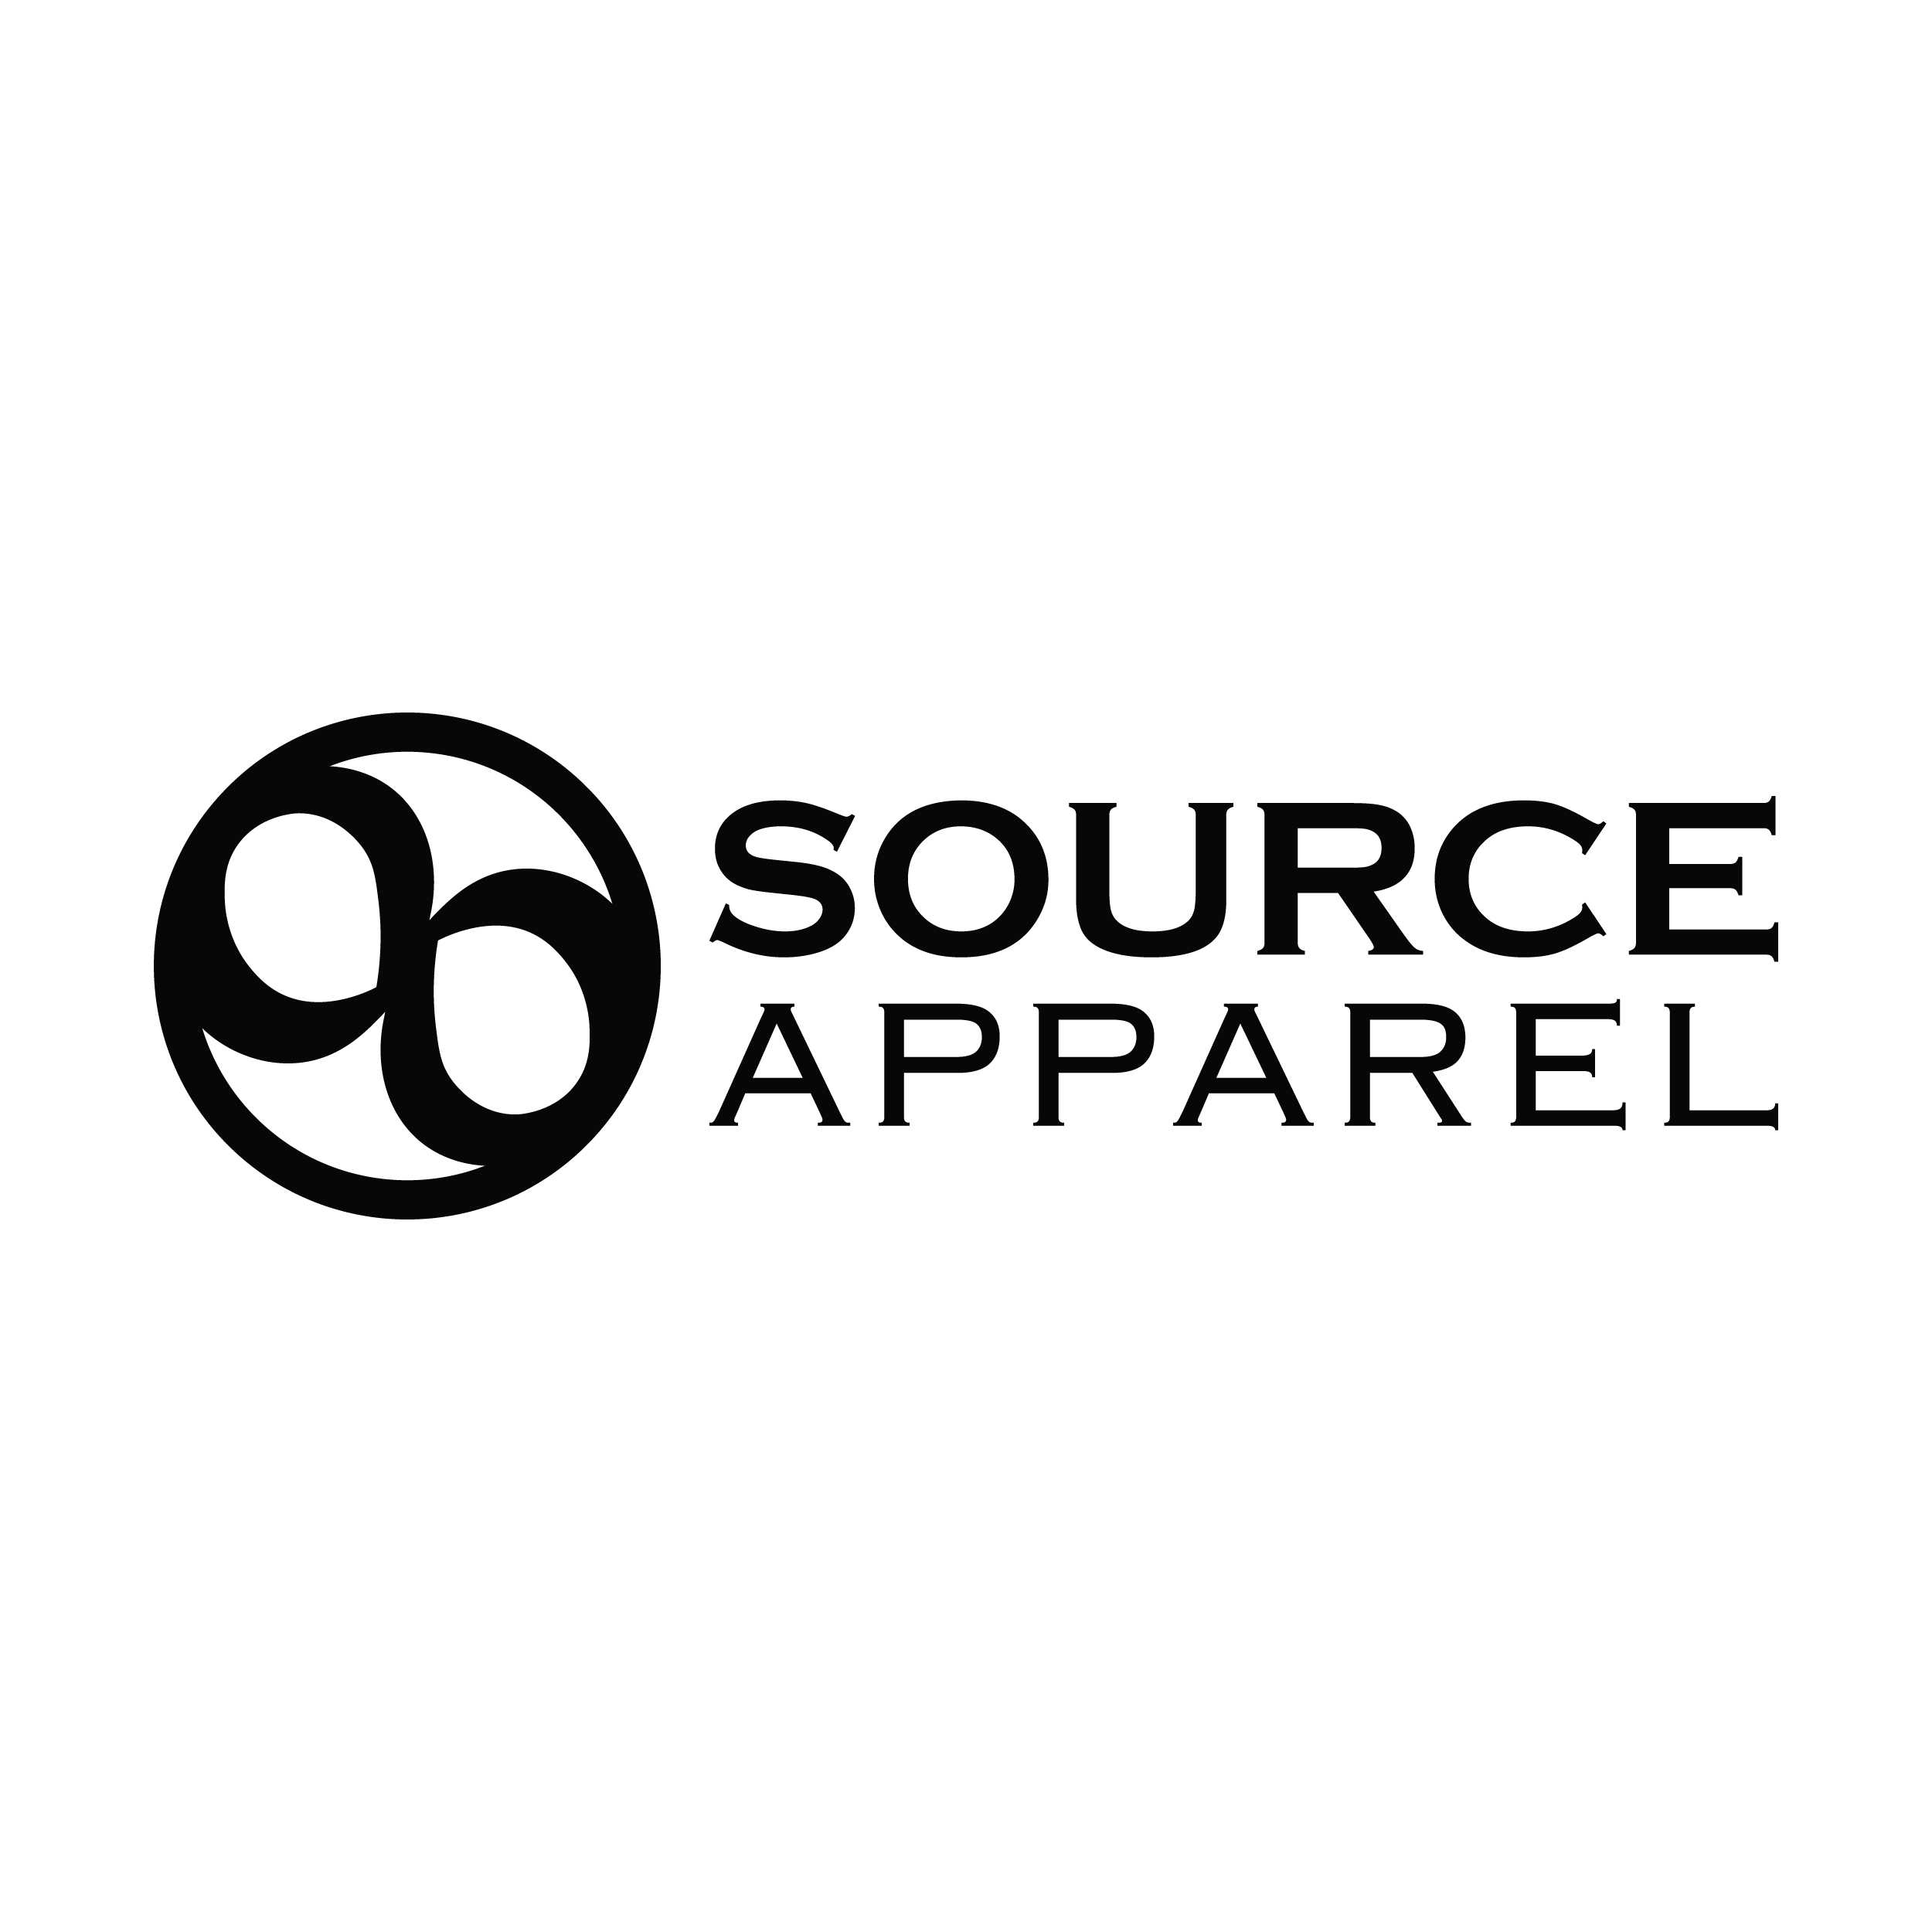 Podcasr Logos_Source Apparel.png